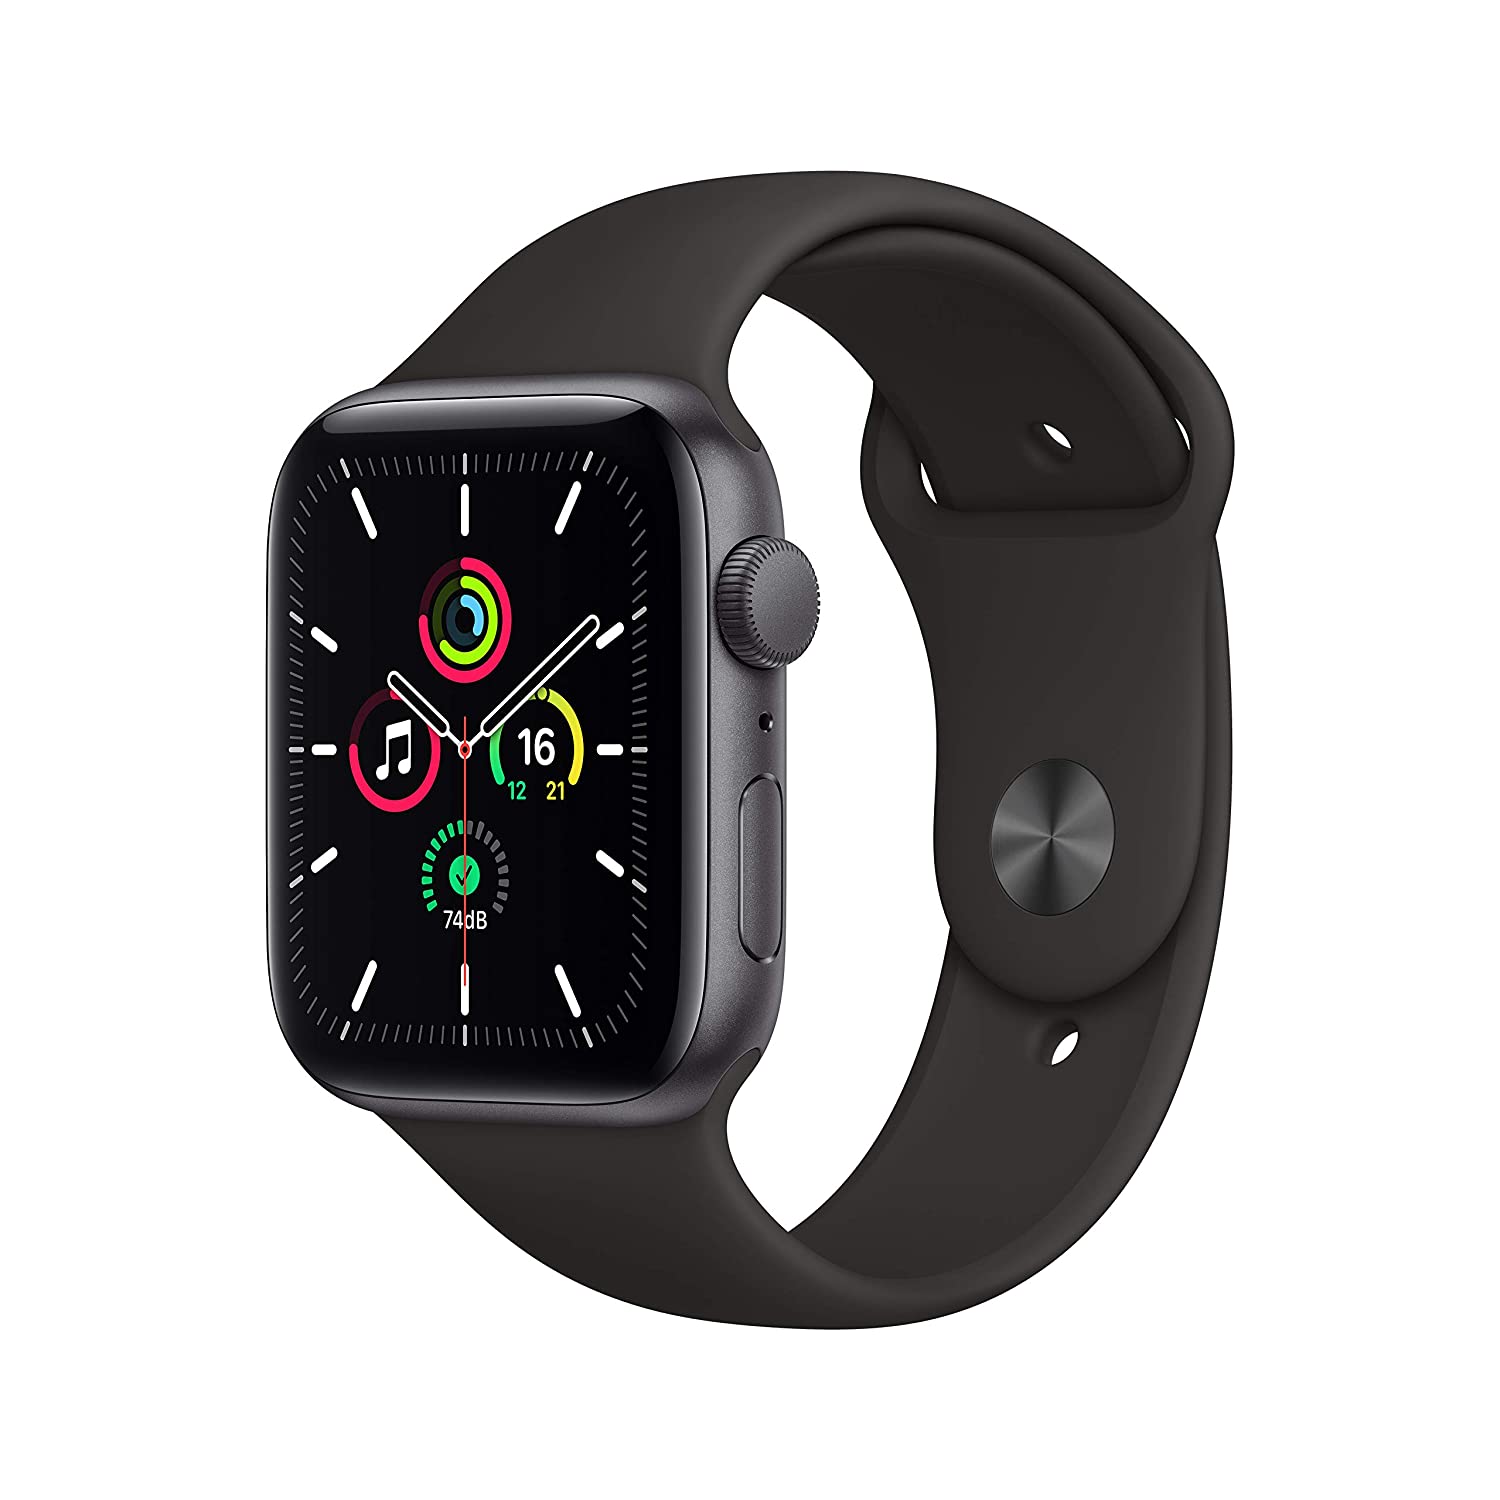 Apple Watch SE Offers